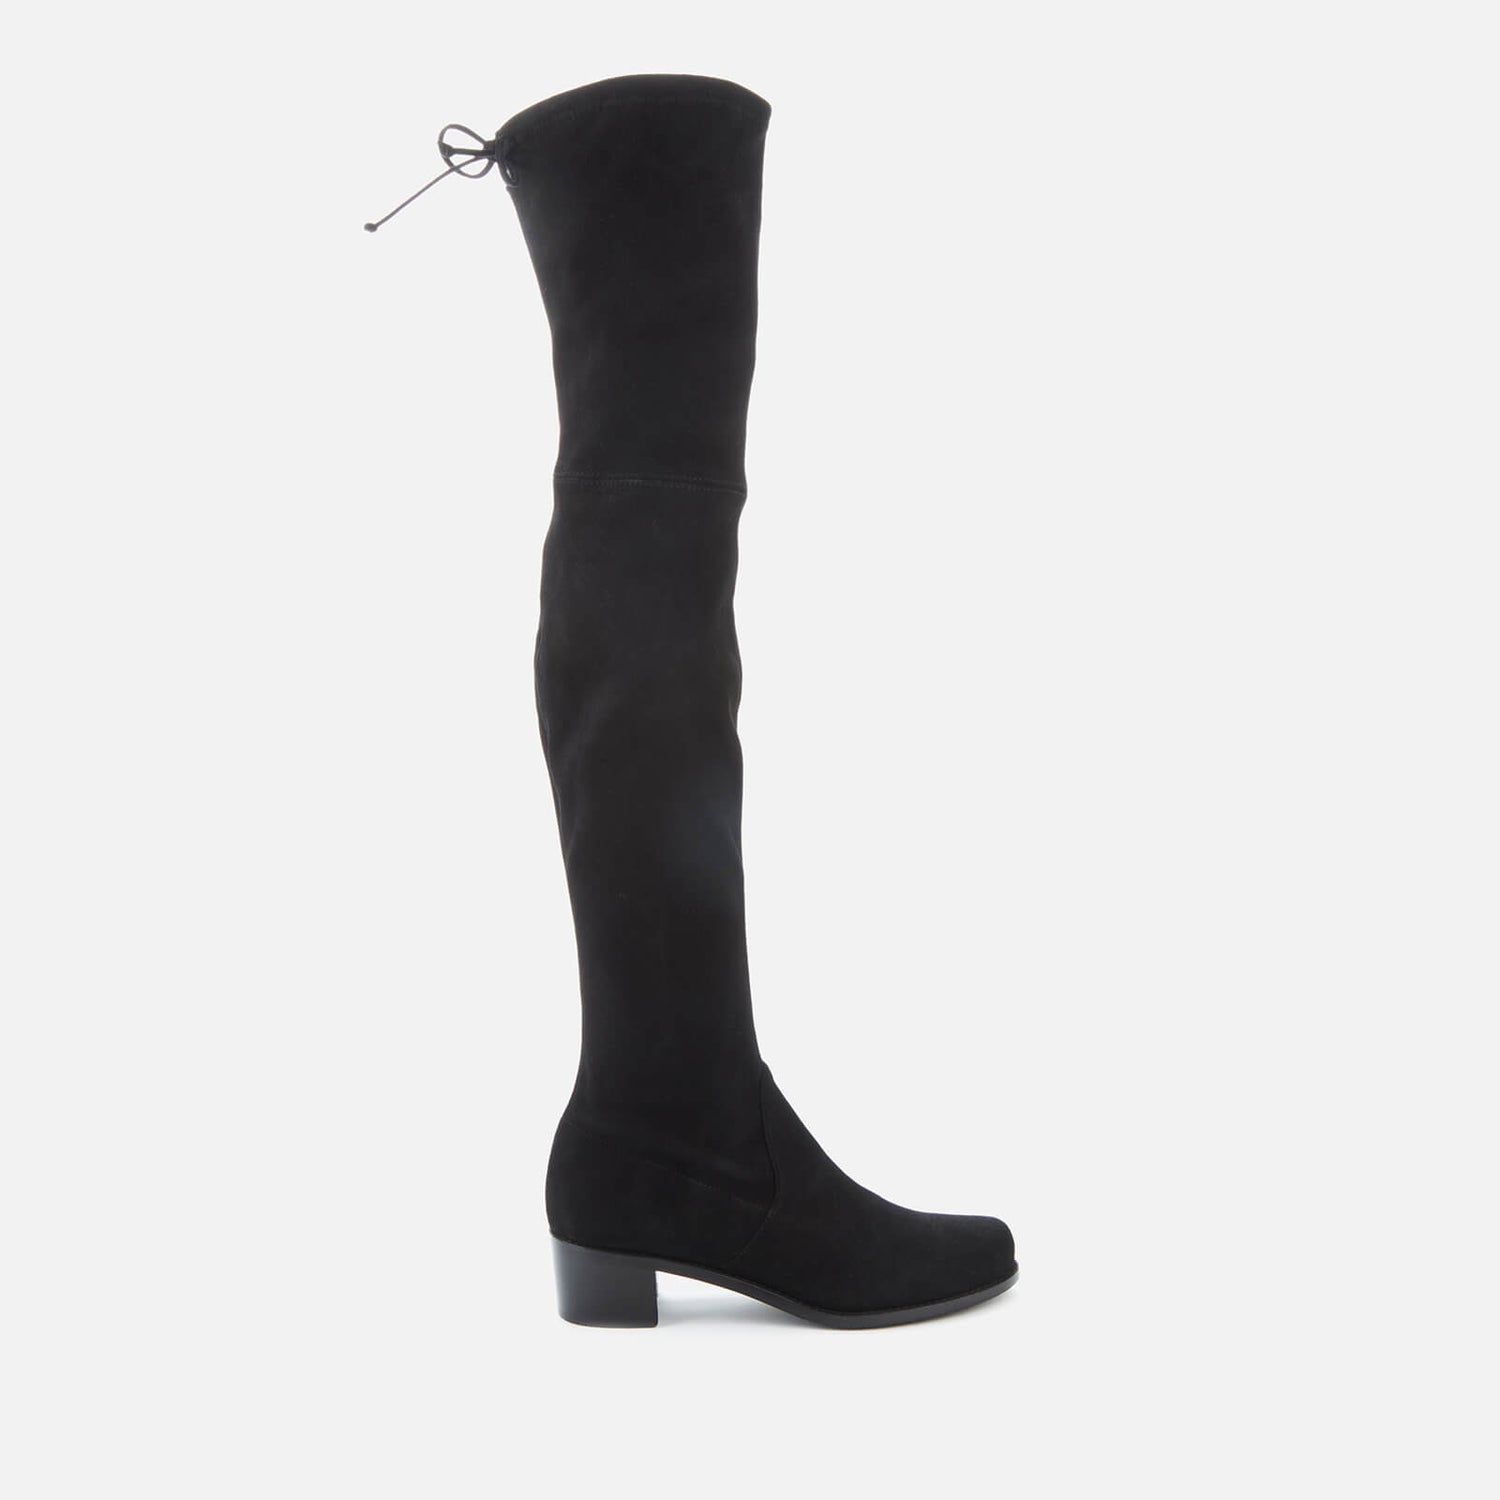 Stuart Weitzman Women's Midland Suede Over The Knee Heeled Boots - Black - UK 3